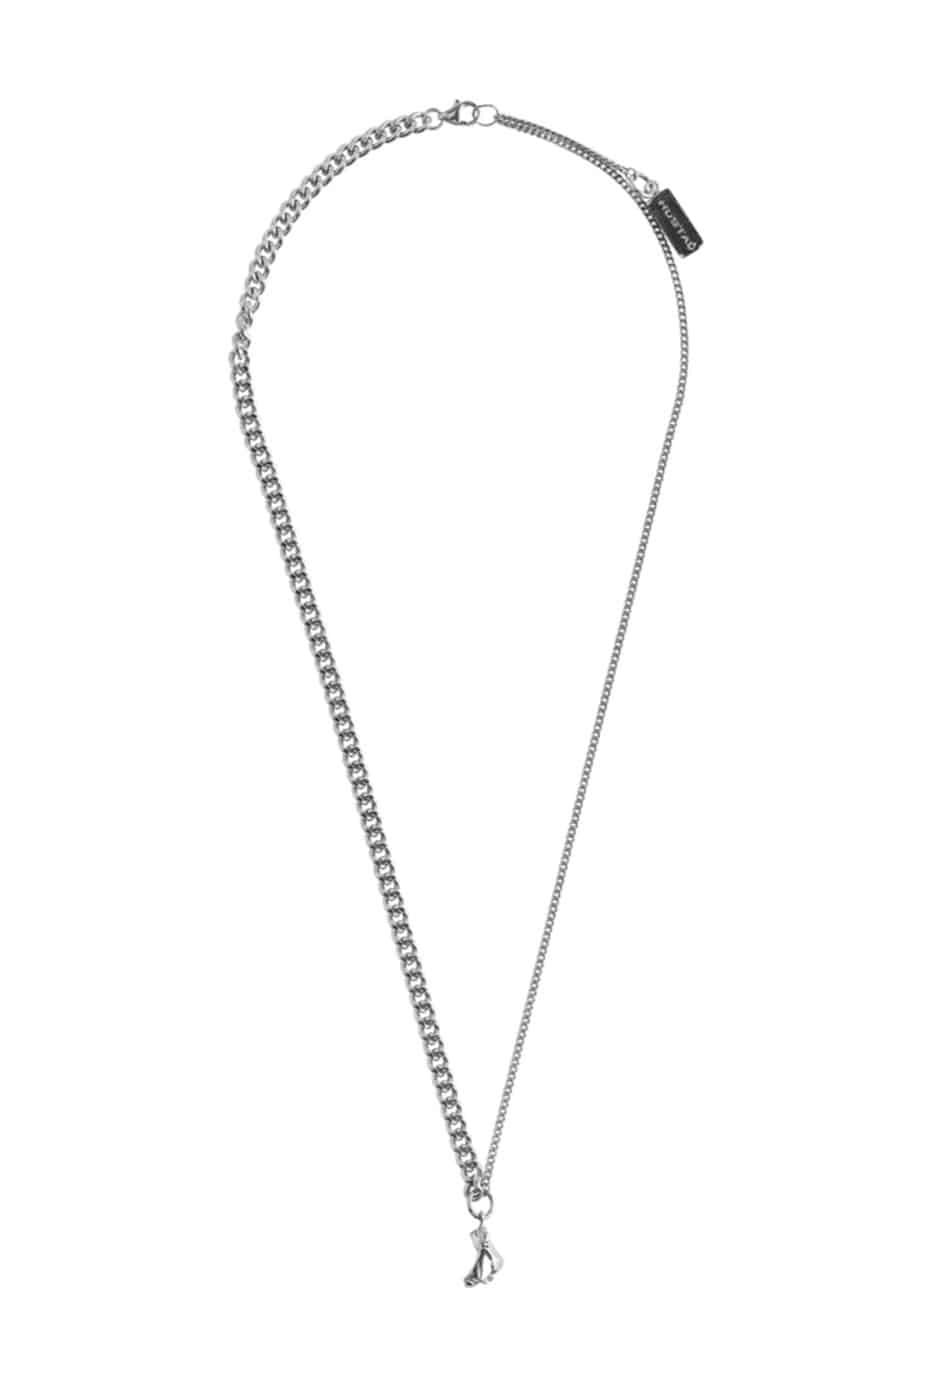 기본트렌드 Hustad #176 silver two-chain choker necklace_925 실버 은 투웨이 초커 네크리스  자체제작 국내 